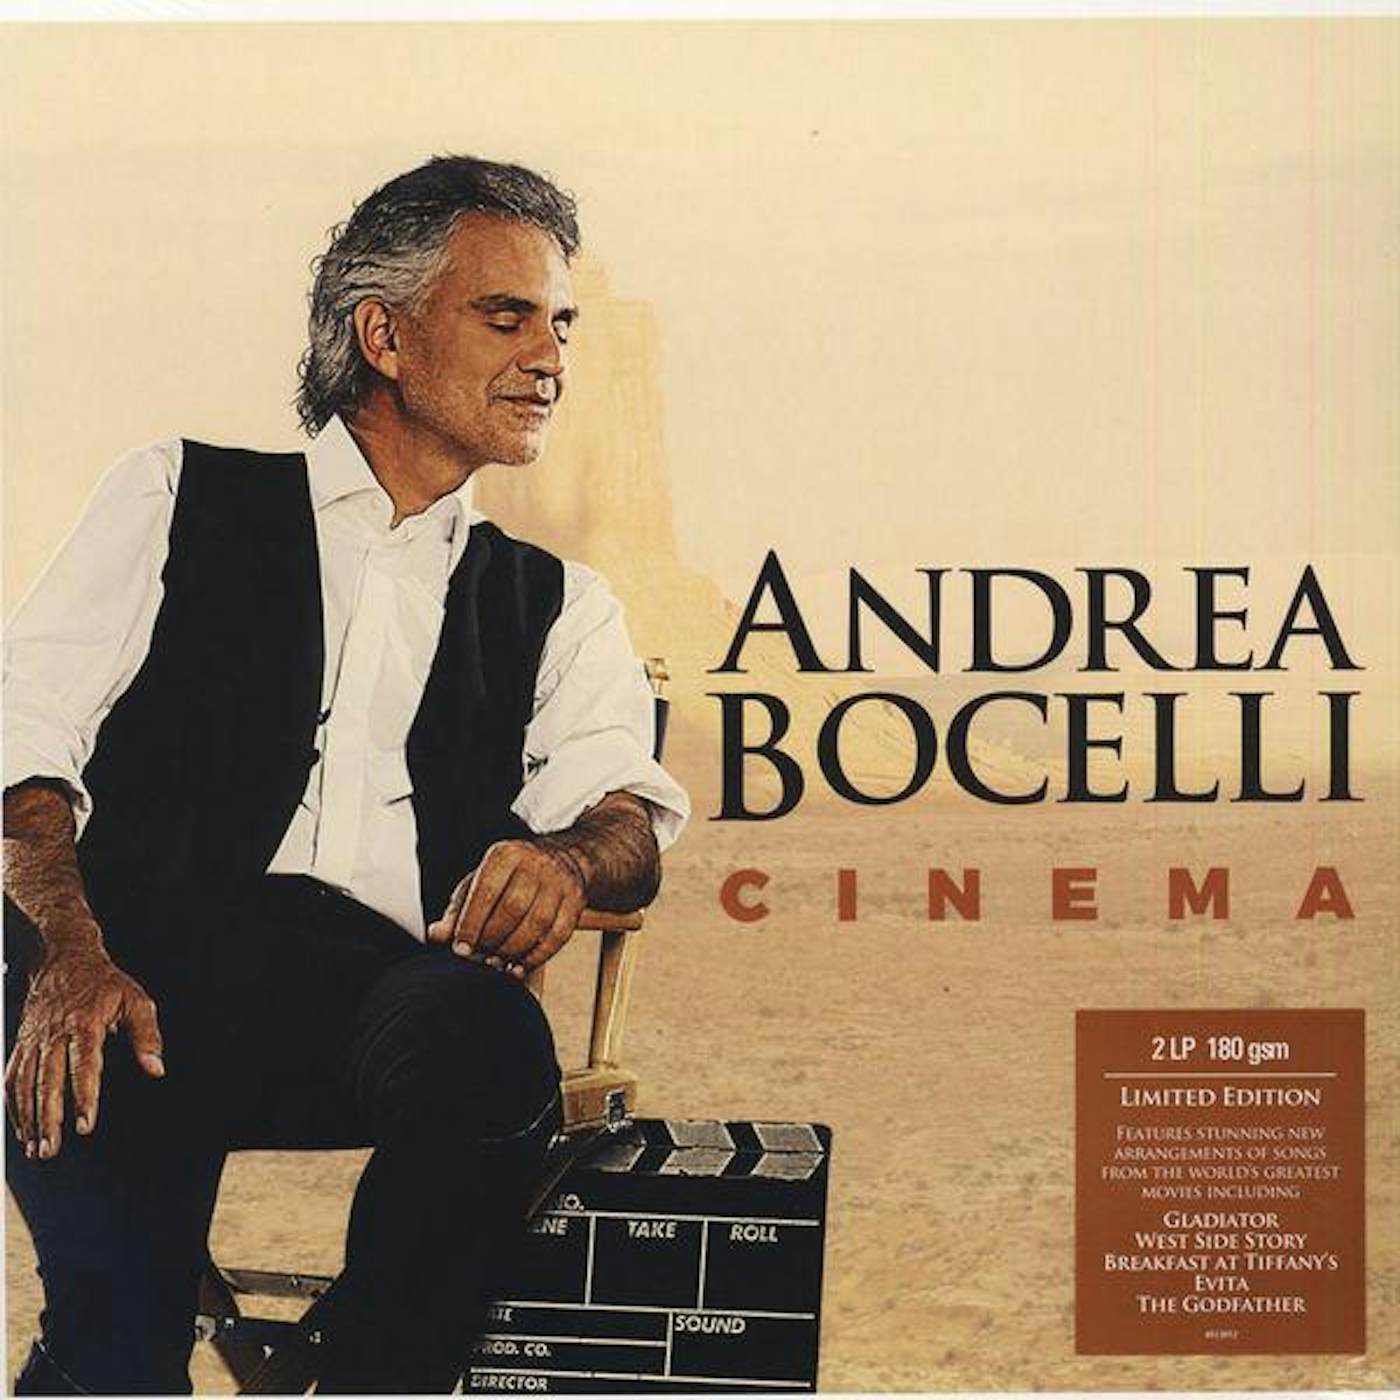 Andrea Bocelli CINEMA (LIMITED) Vinyl Record